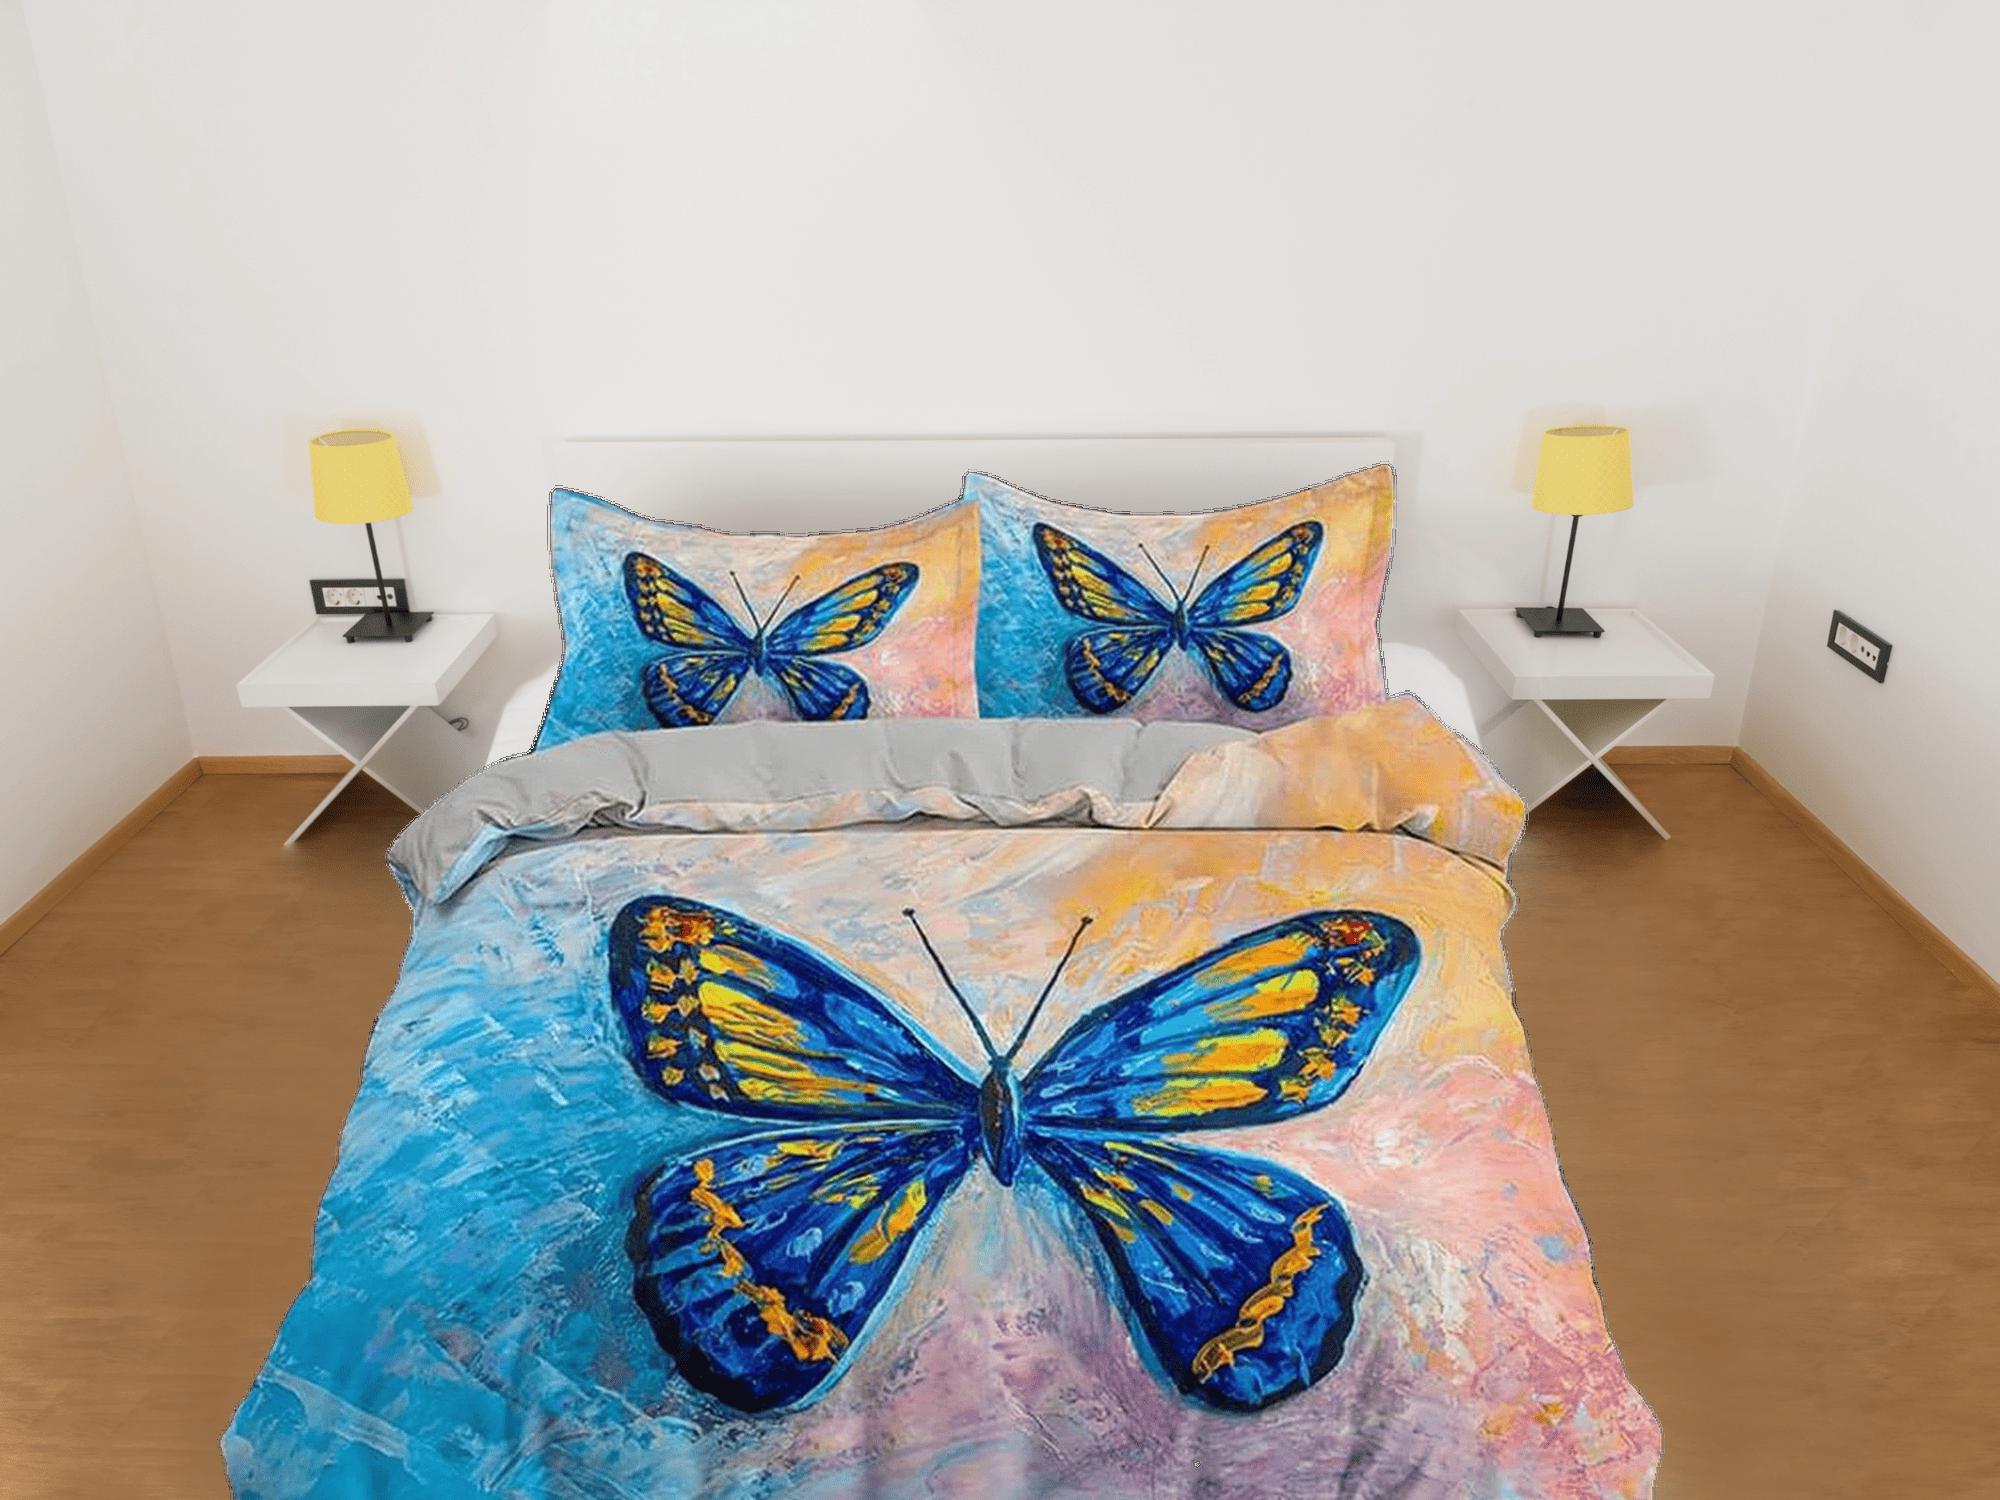 daintyduvet Blue butterfly art painting bedding duvet cover boho chic dorm bedding full size adult duvet king queen twin, nursery toddler bedding